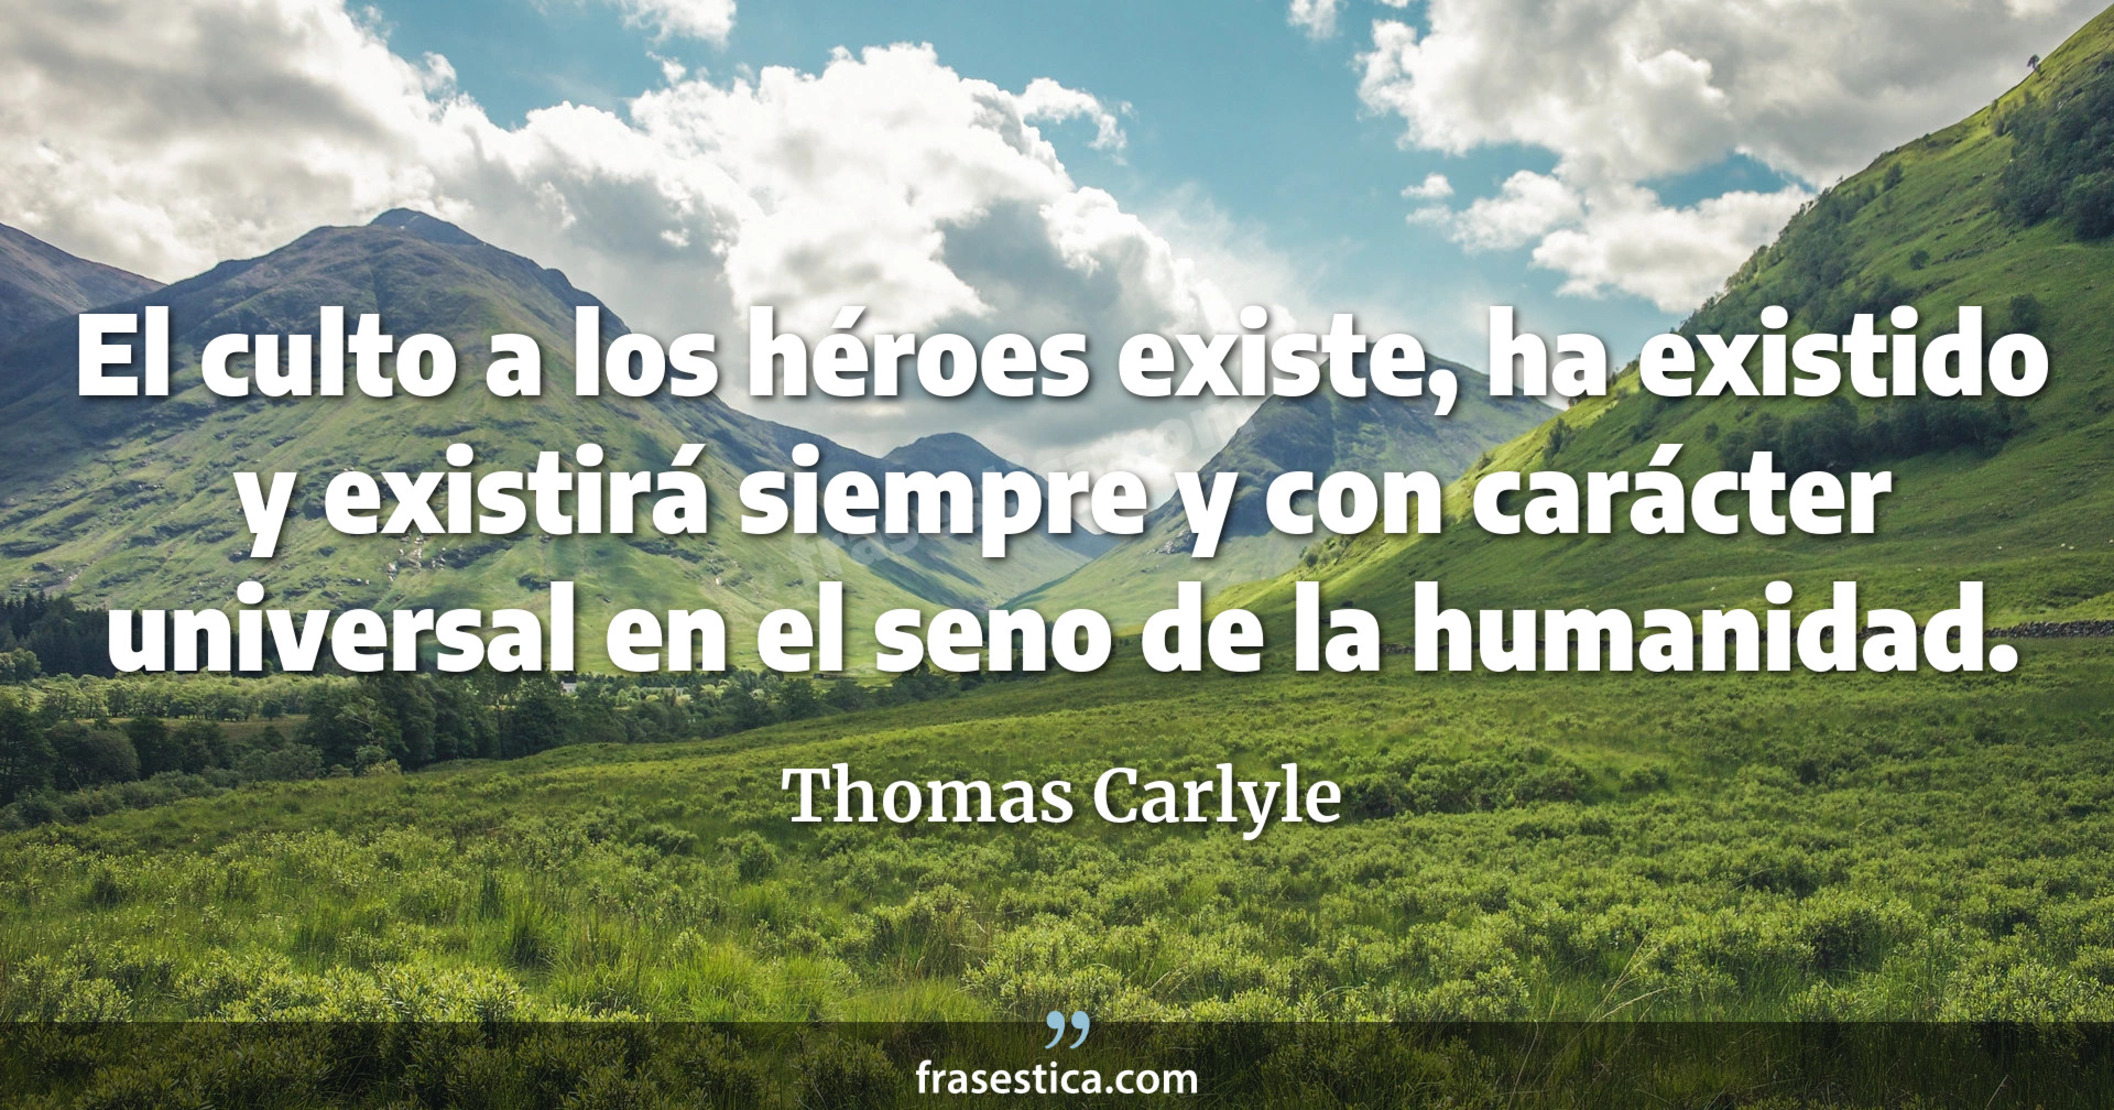 El culto a los héroes existe, ha existido y existirá siempre y con carácter universal en el seno de la humanidad. - Thomas Carlyle